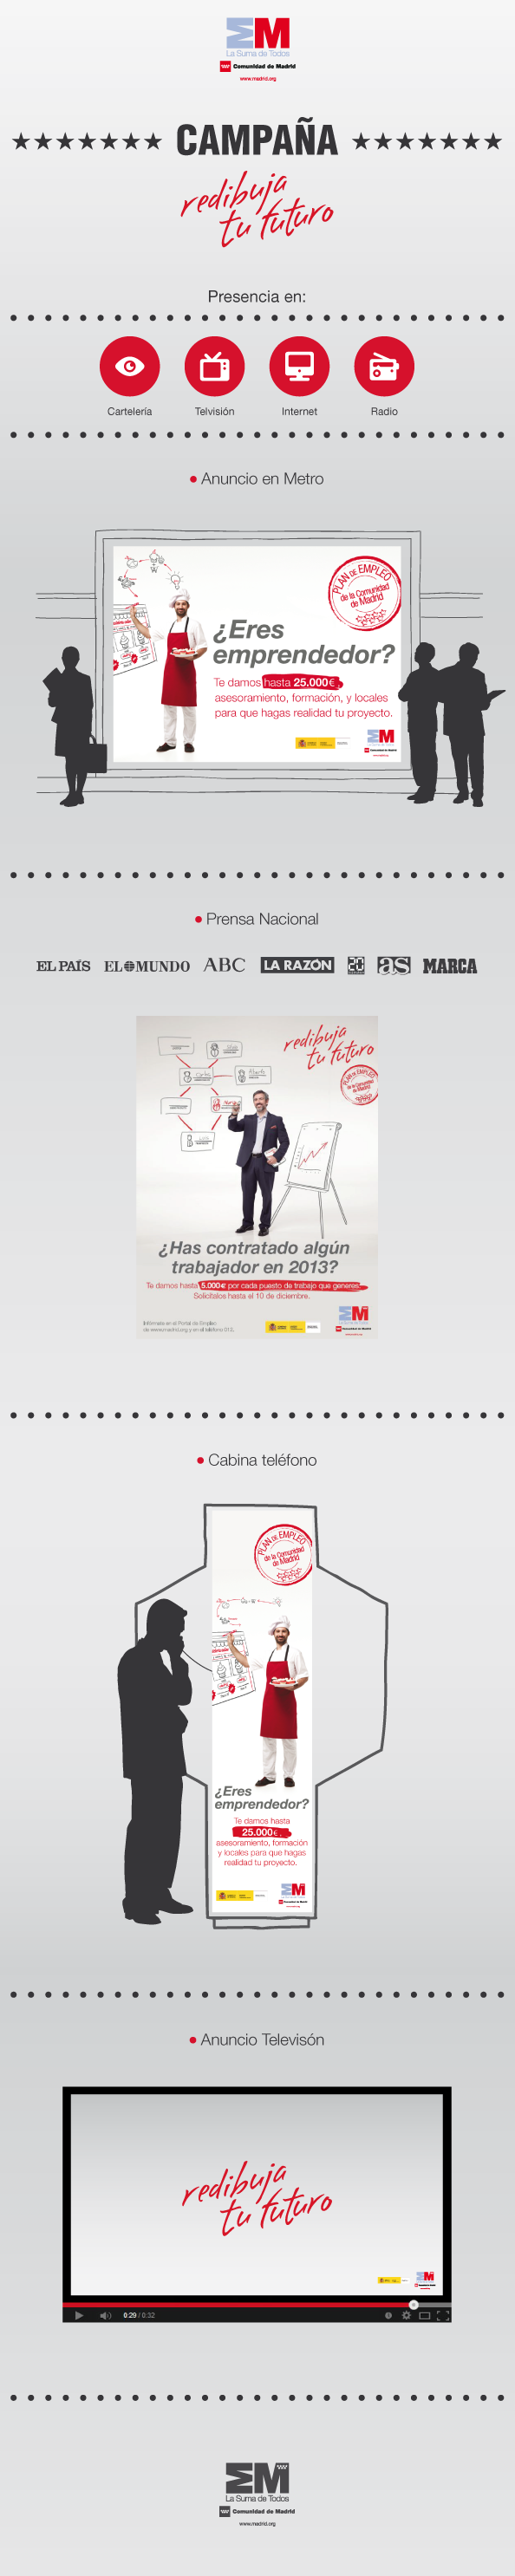 Campaña "Redibuja tu futuro" Comunidad de Madrid -1